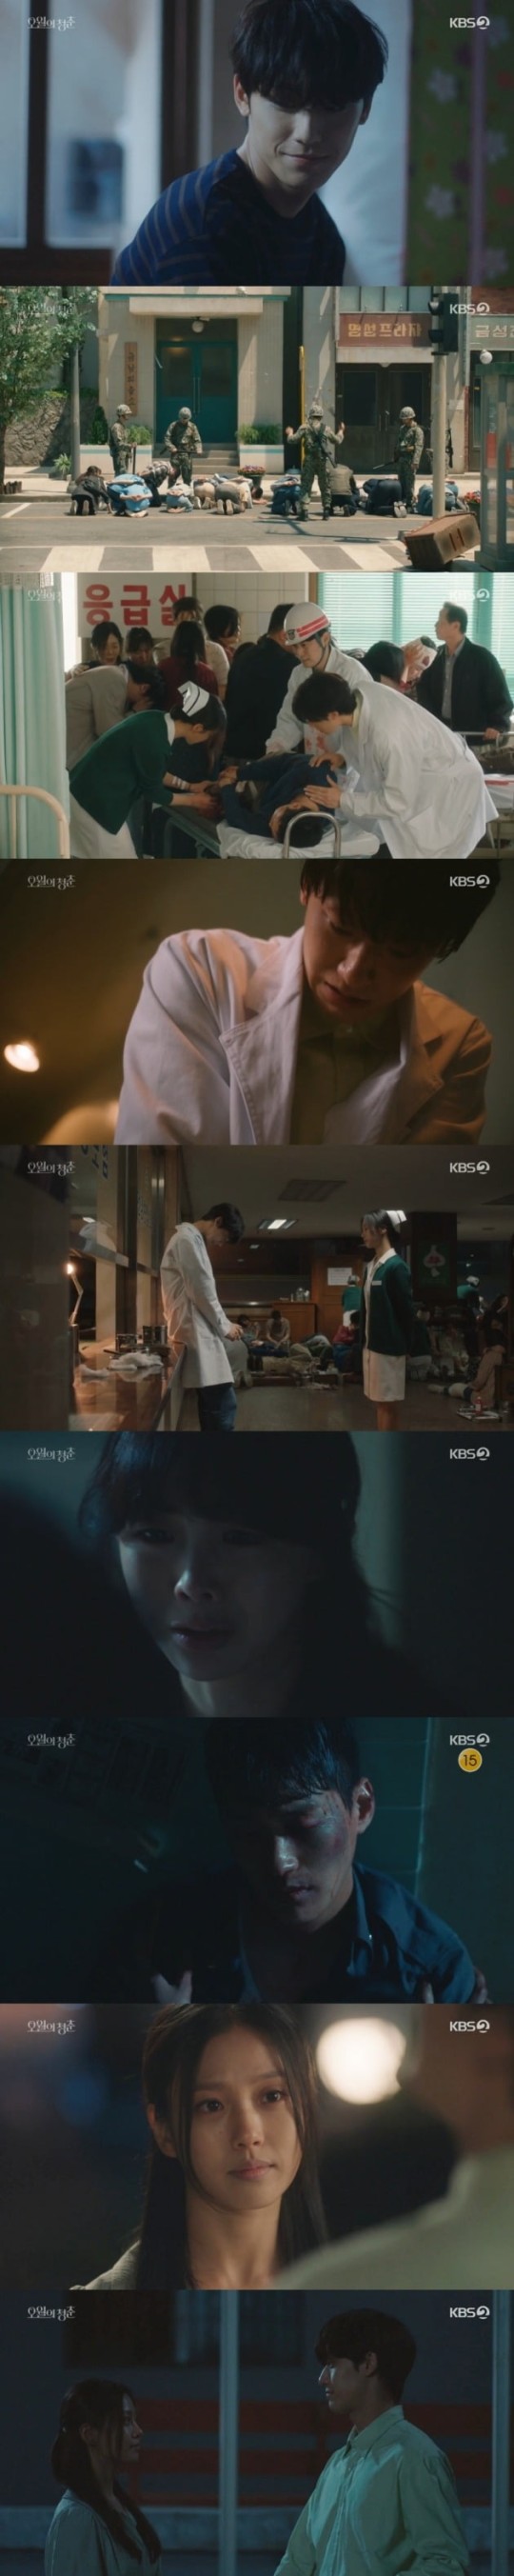 KBS2 ‘오월의 청춘’ 방송 화면